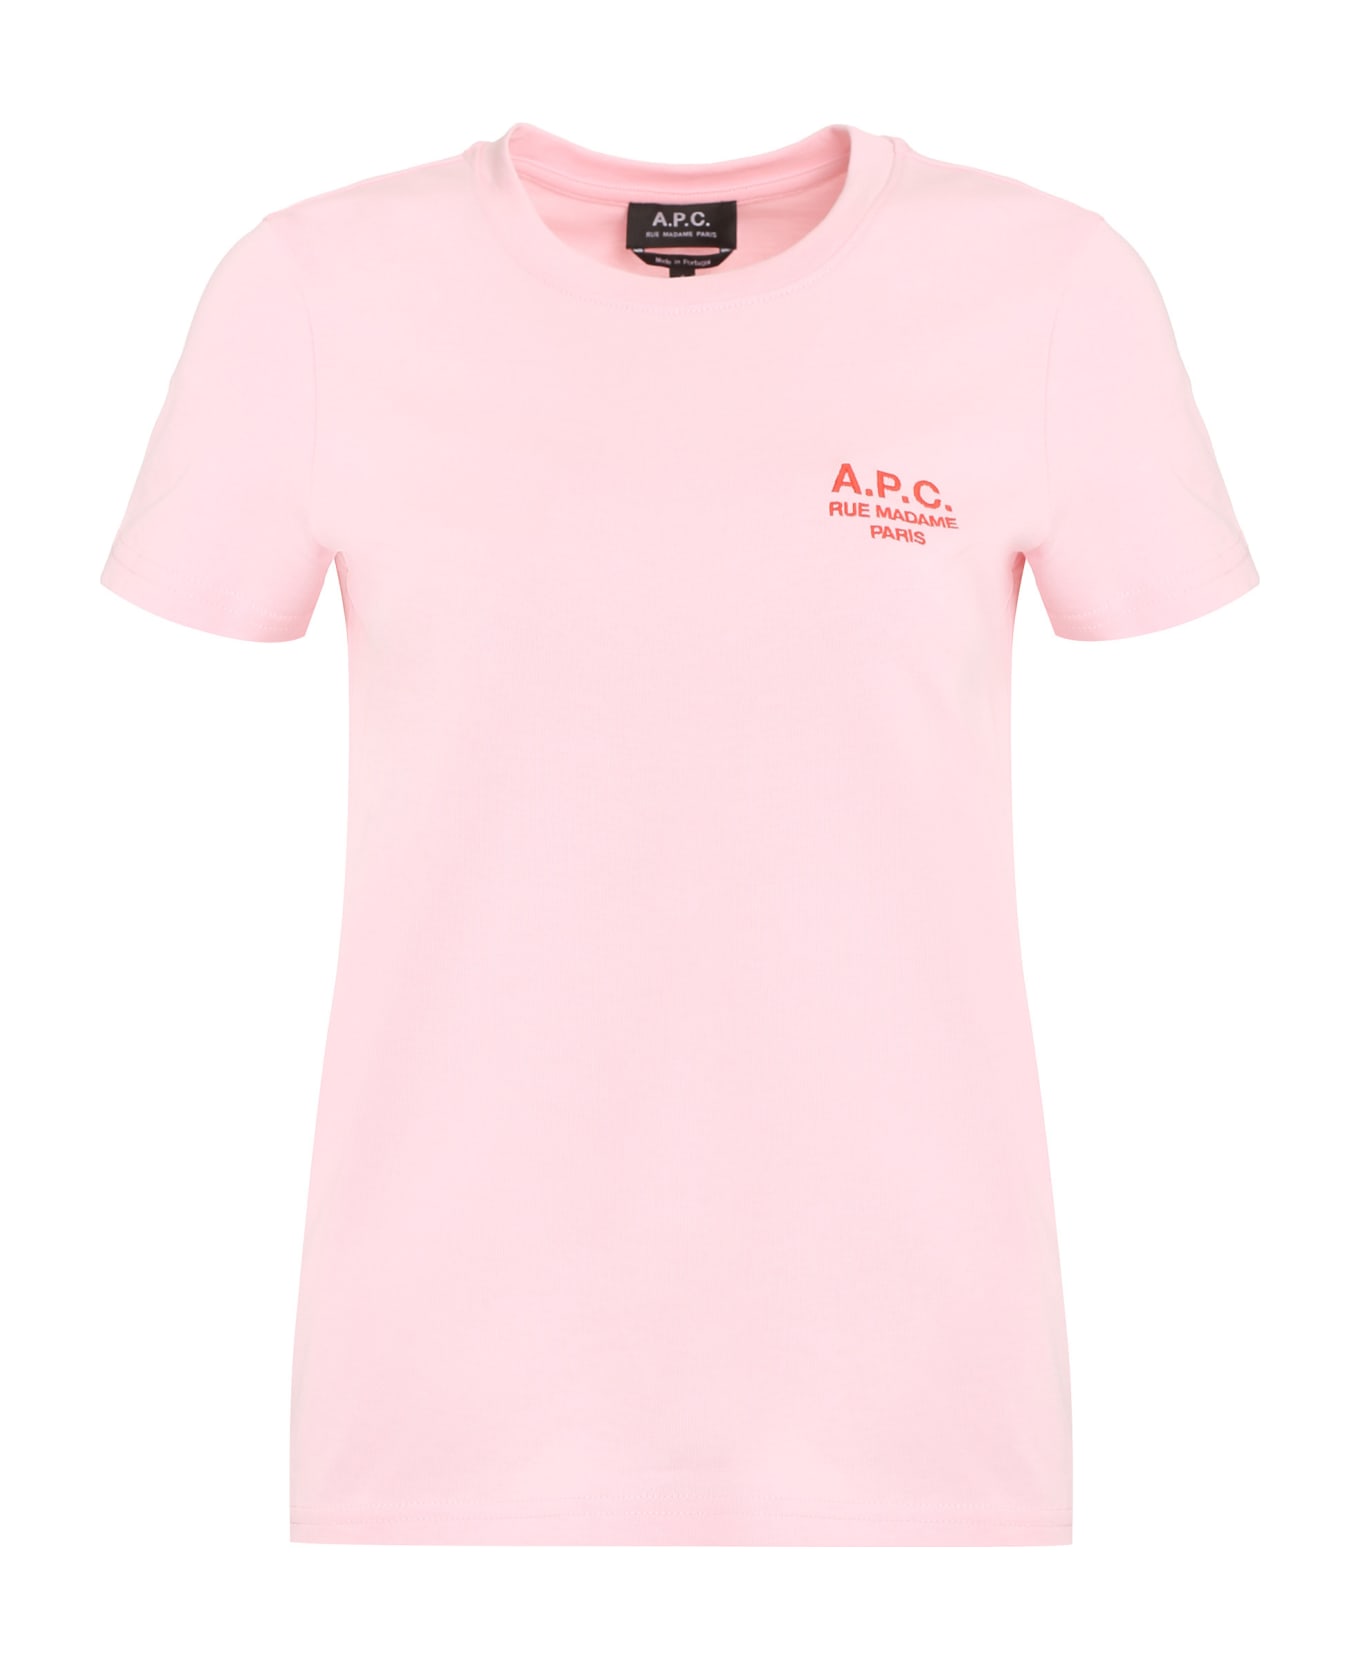 A.P.C. Denise Cotton Crew-neck T-shirt - Pink Tシャツ